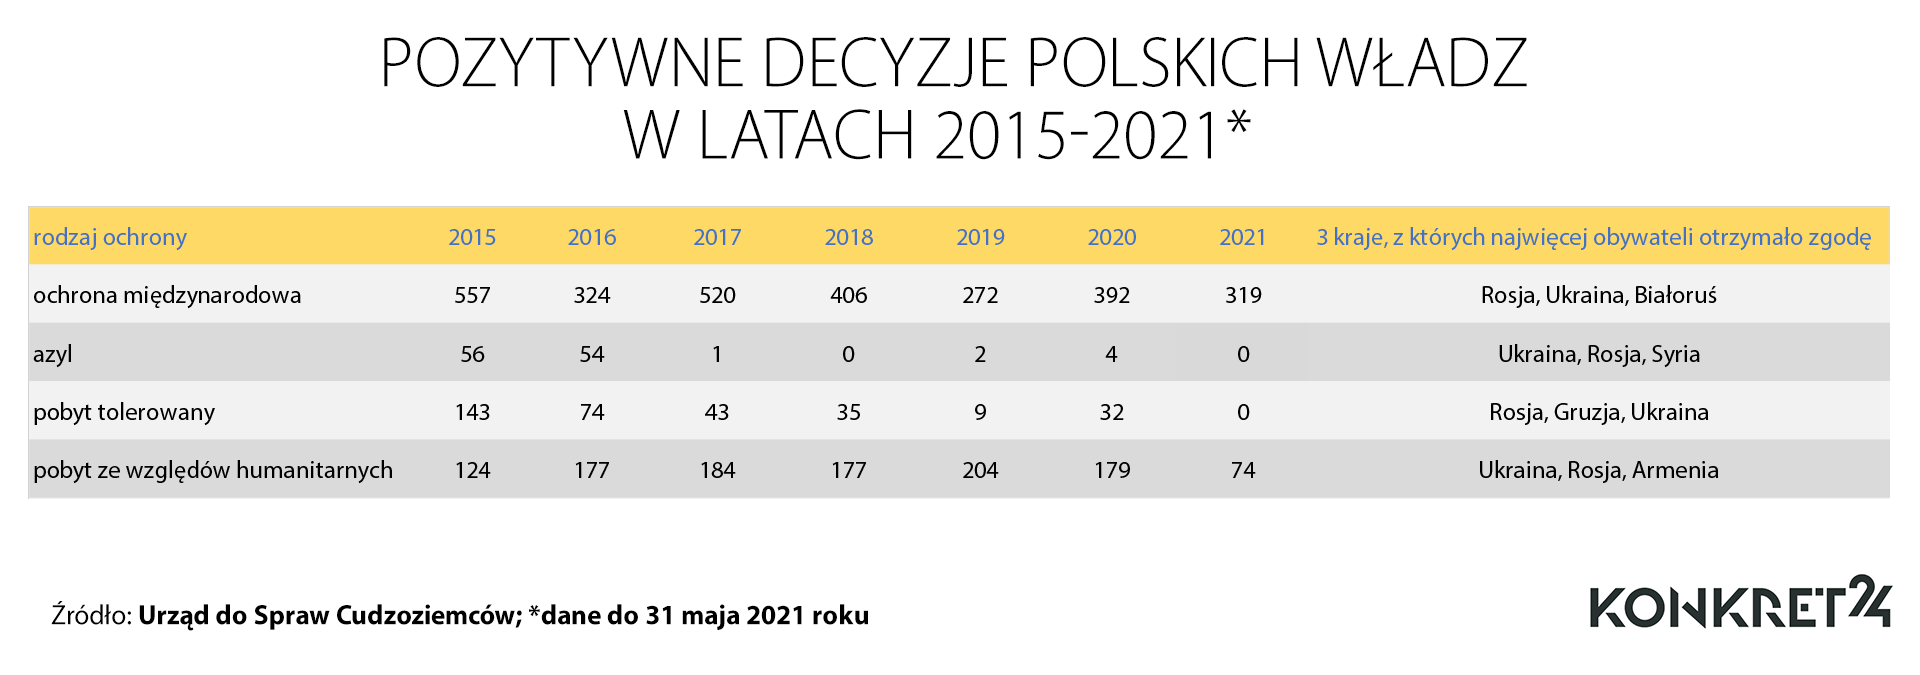 Pozytywne decyzje polskich władz w latach 2015-2021